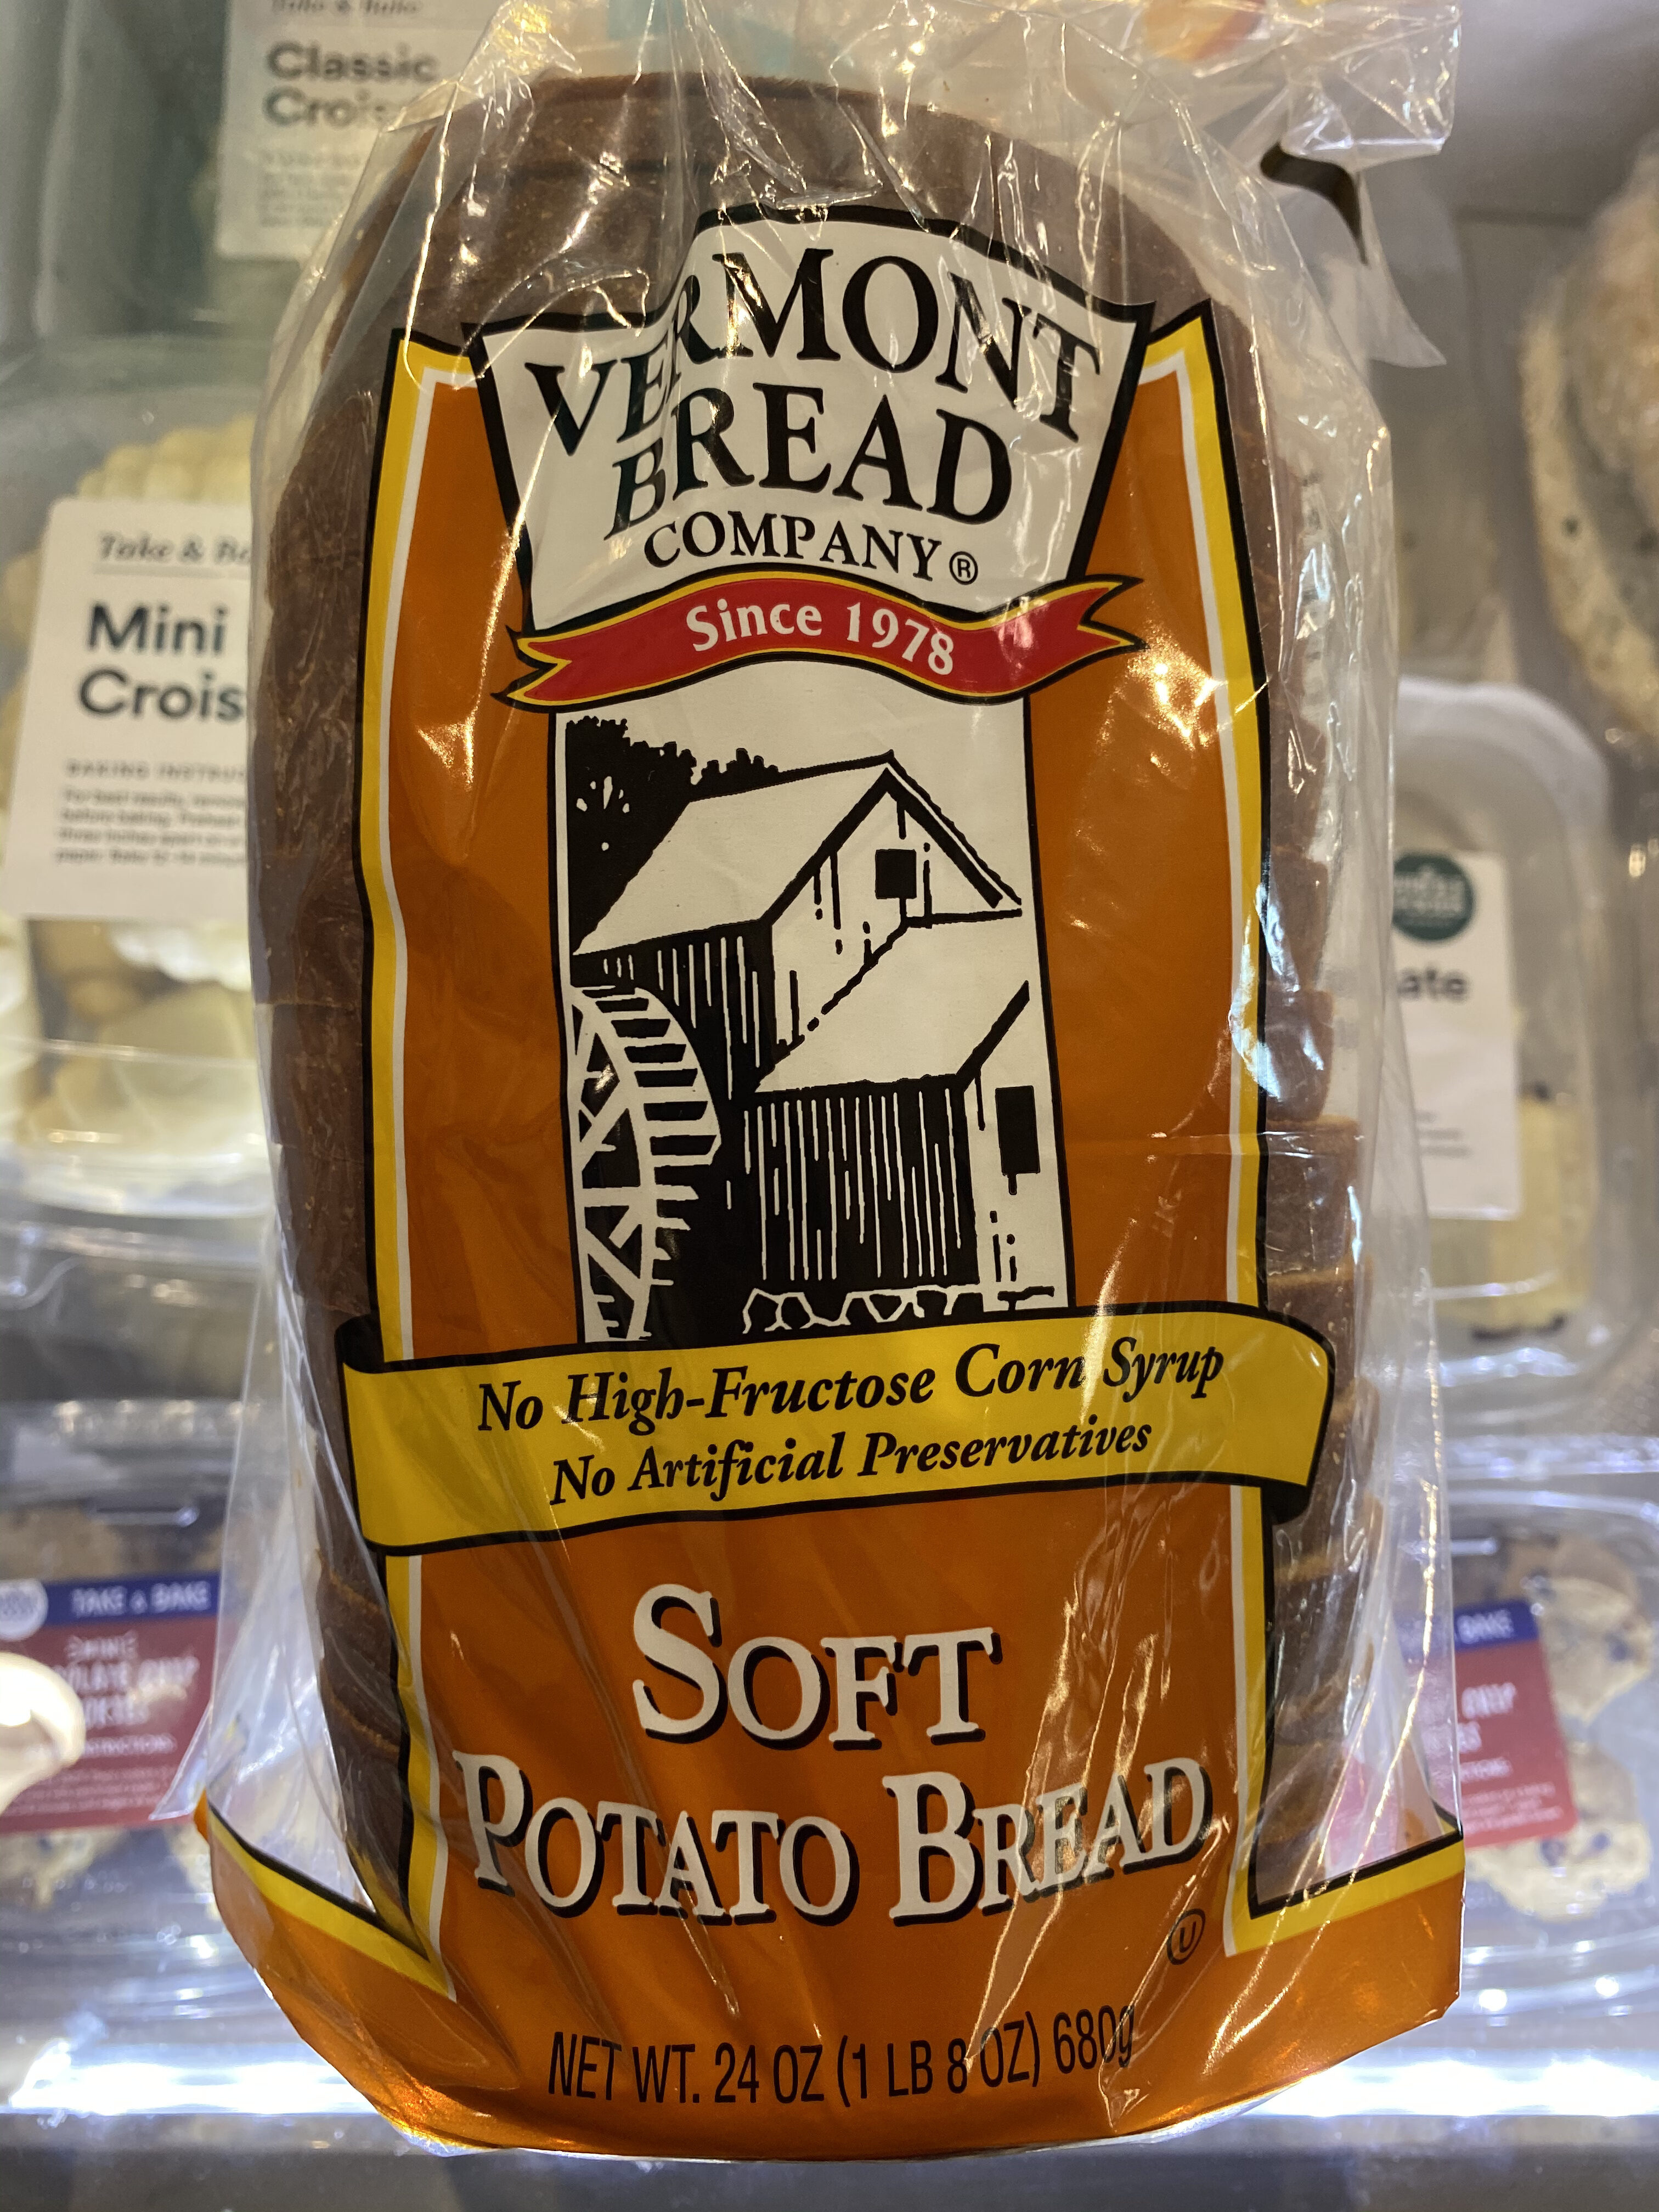 Soft Potato Bread Vermont Bread Company 24 Oz,White Asparagus Pantone